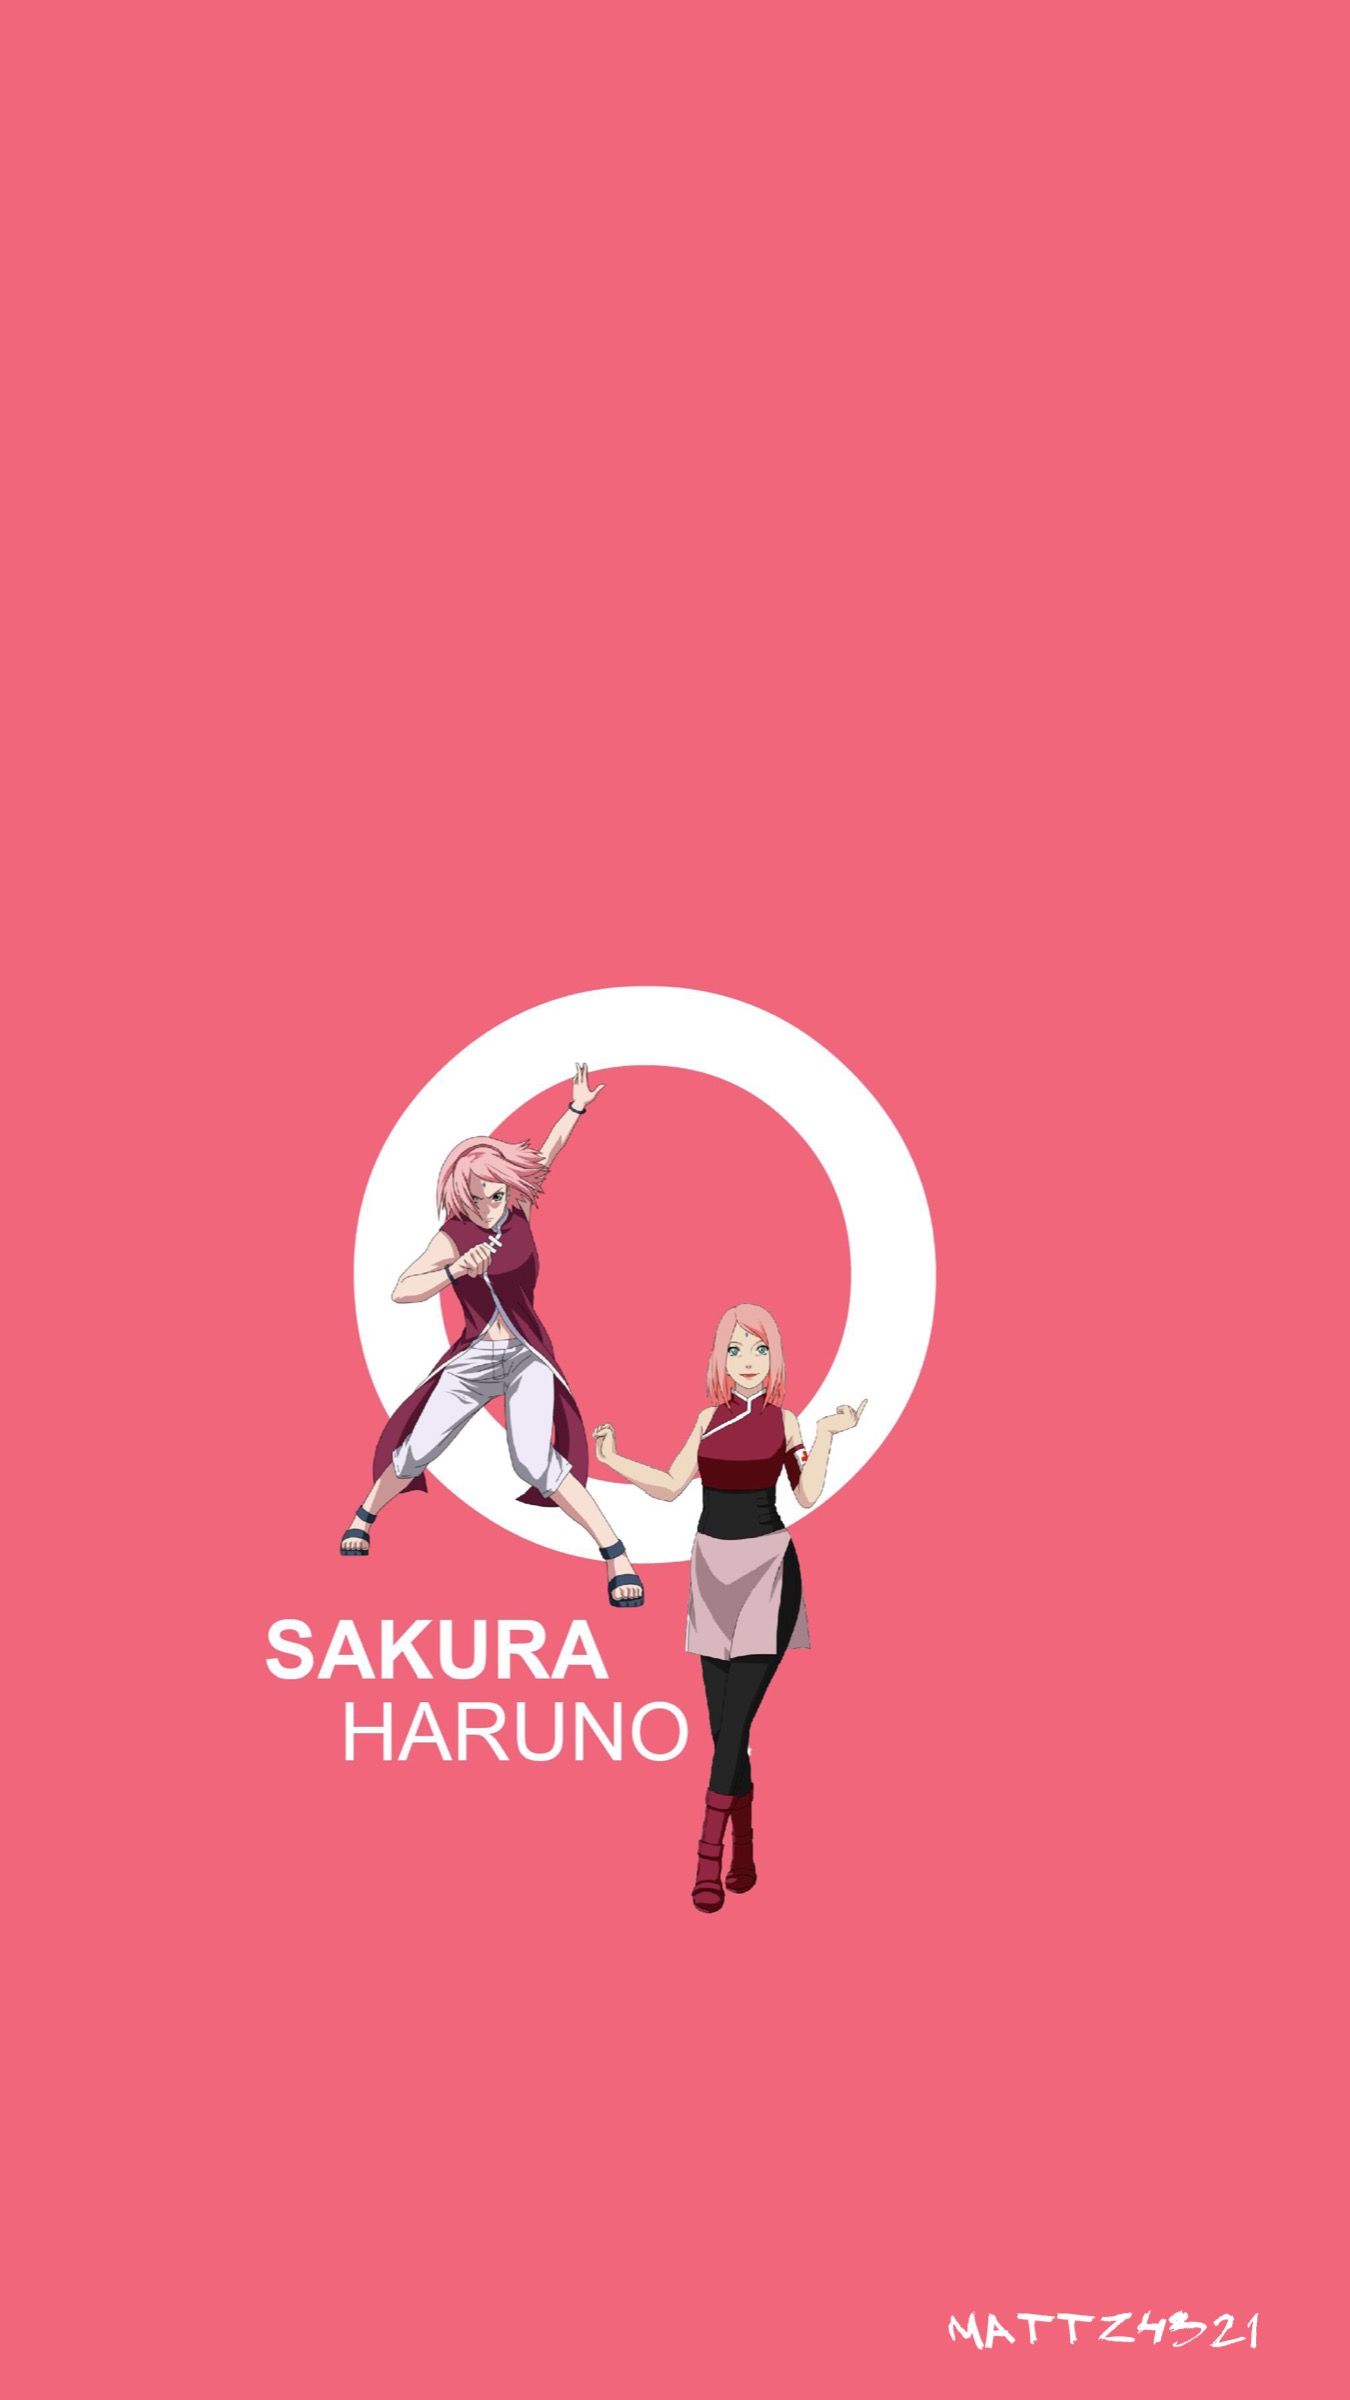 Wallpaper : naruto anime, Naruto Shippuuden, Mashashi Kishimoto, 4k, Studio  Pierrot, Road to Naruto 20, Sakura Naruto, Uchiha Sasuke 3840x2176 -  MeaningJun - 2183237 - HD Wallpapers - WallHere